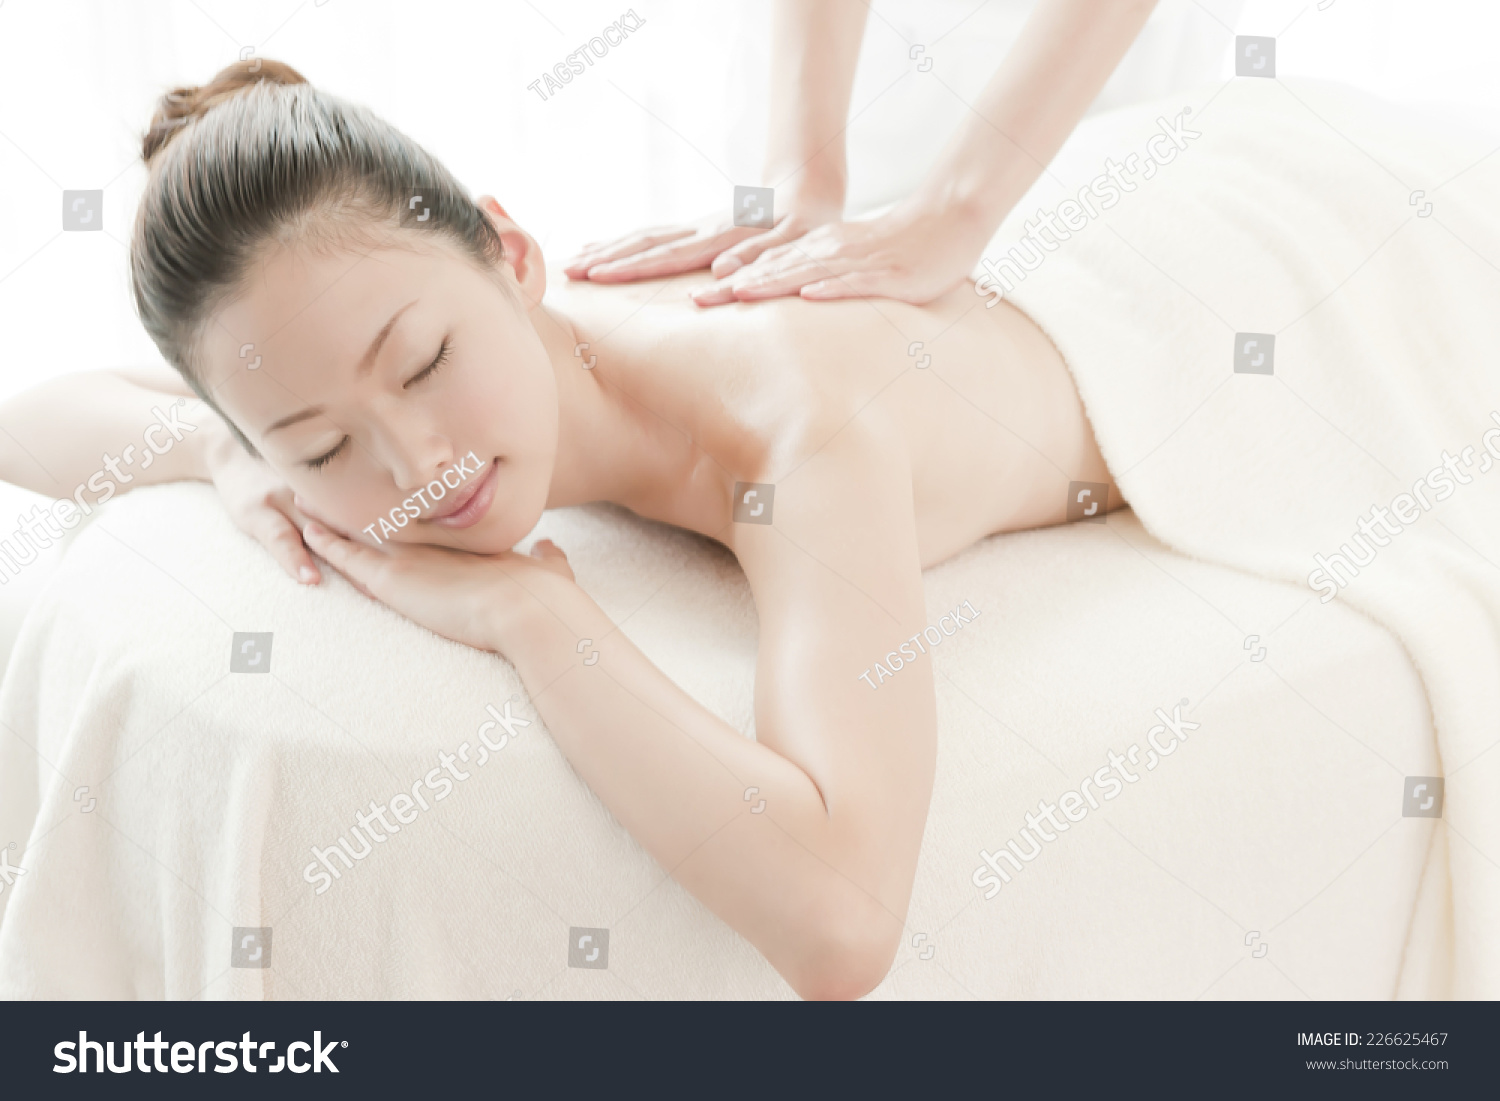 japanese wife oil massage naked photo